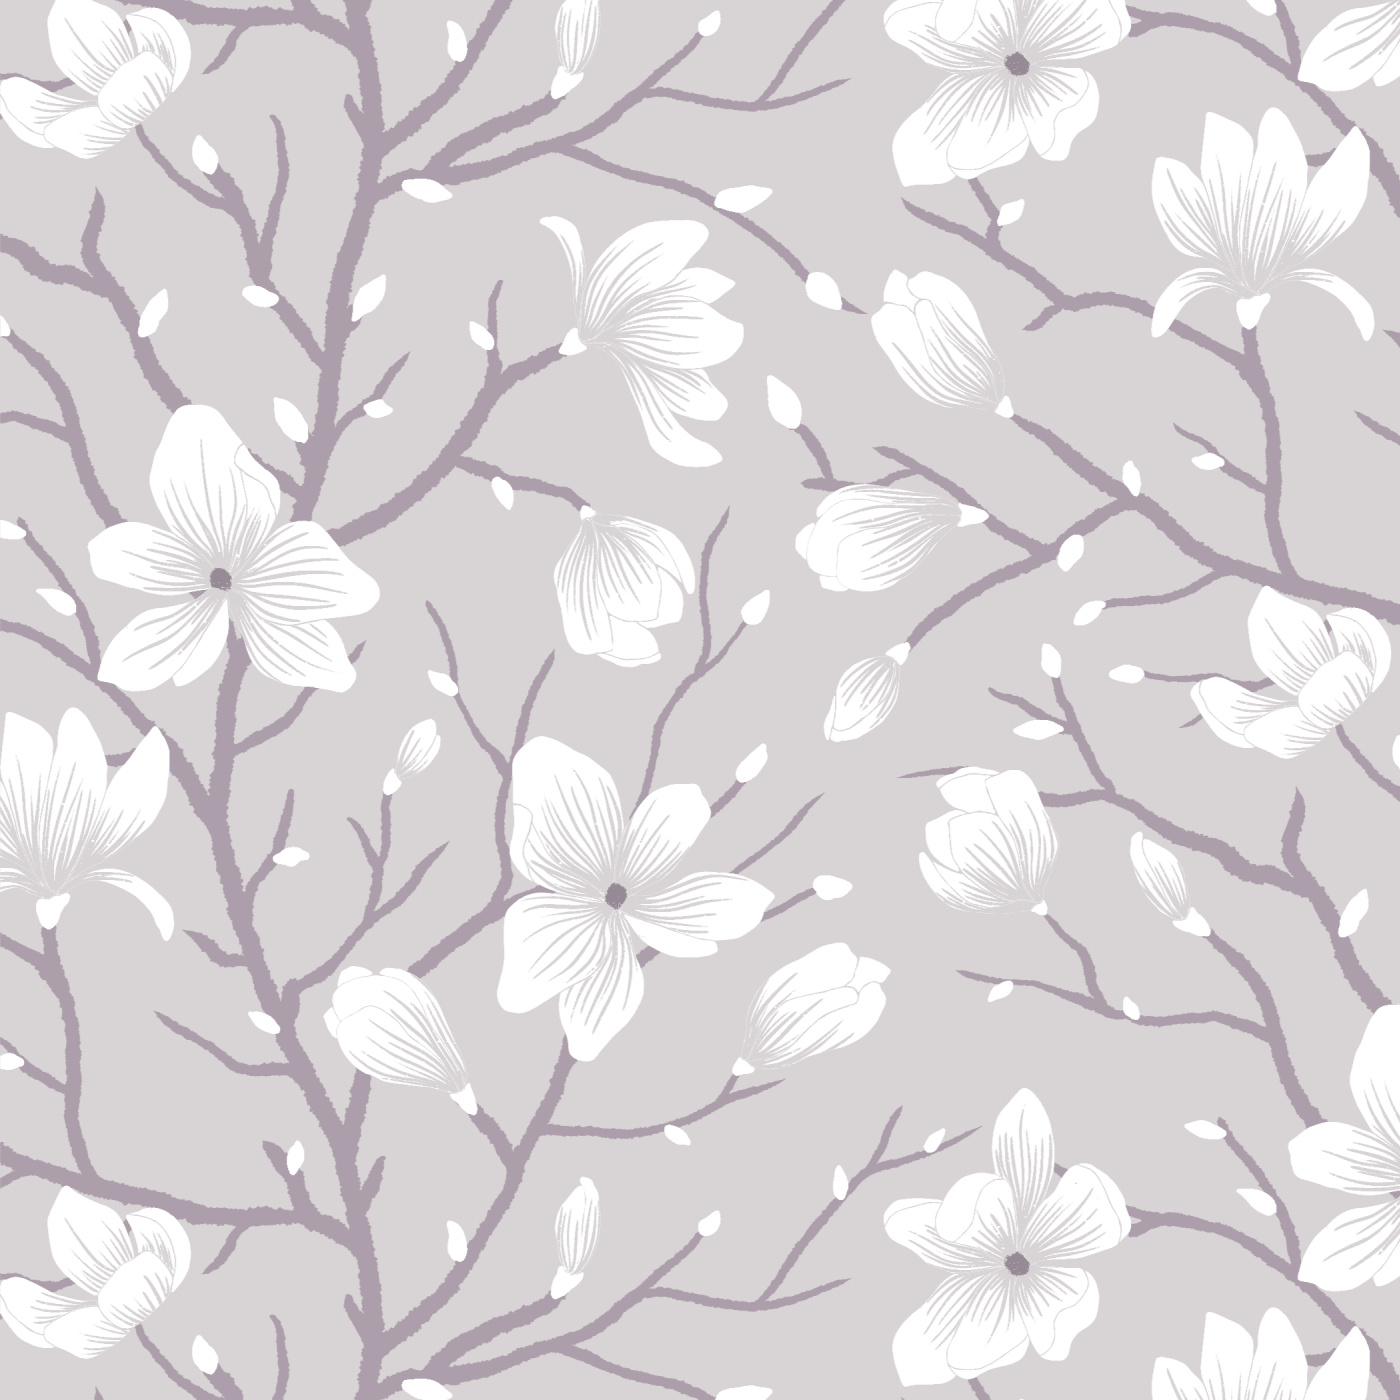 Magnolia Branches Wallpaper